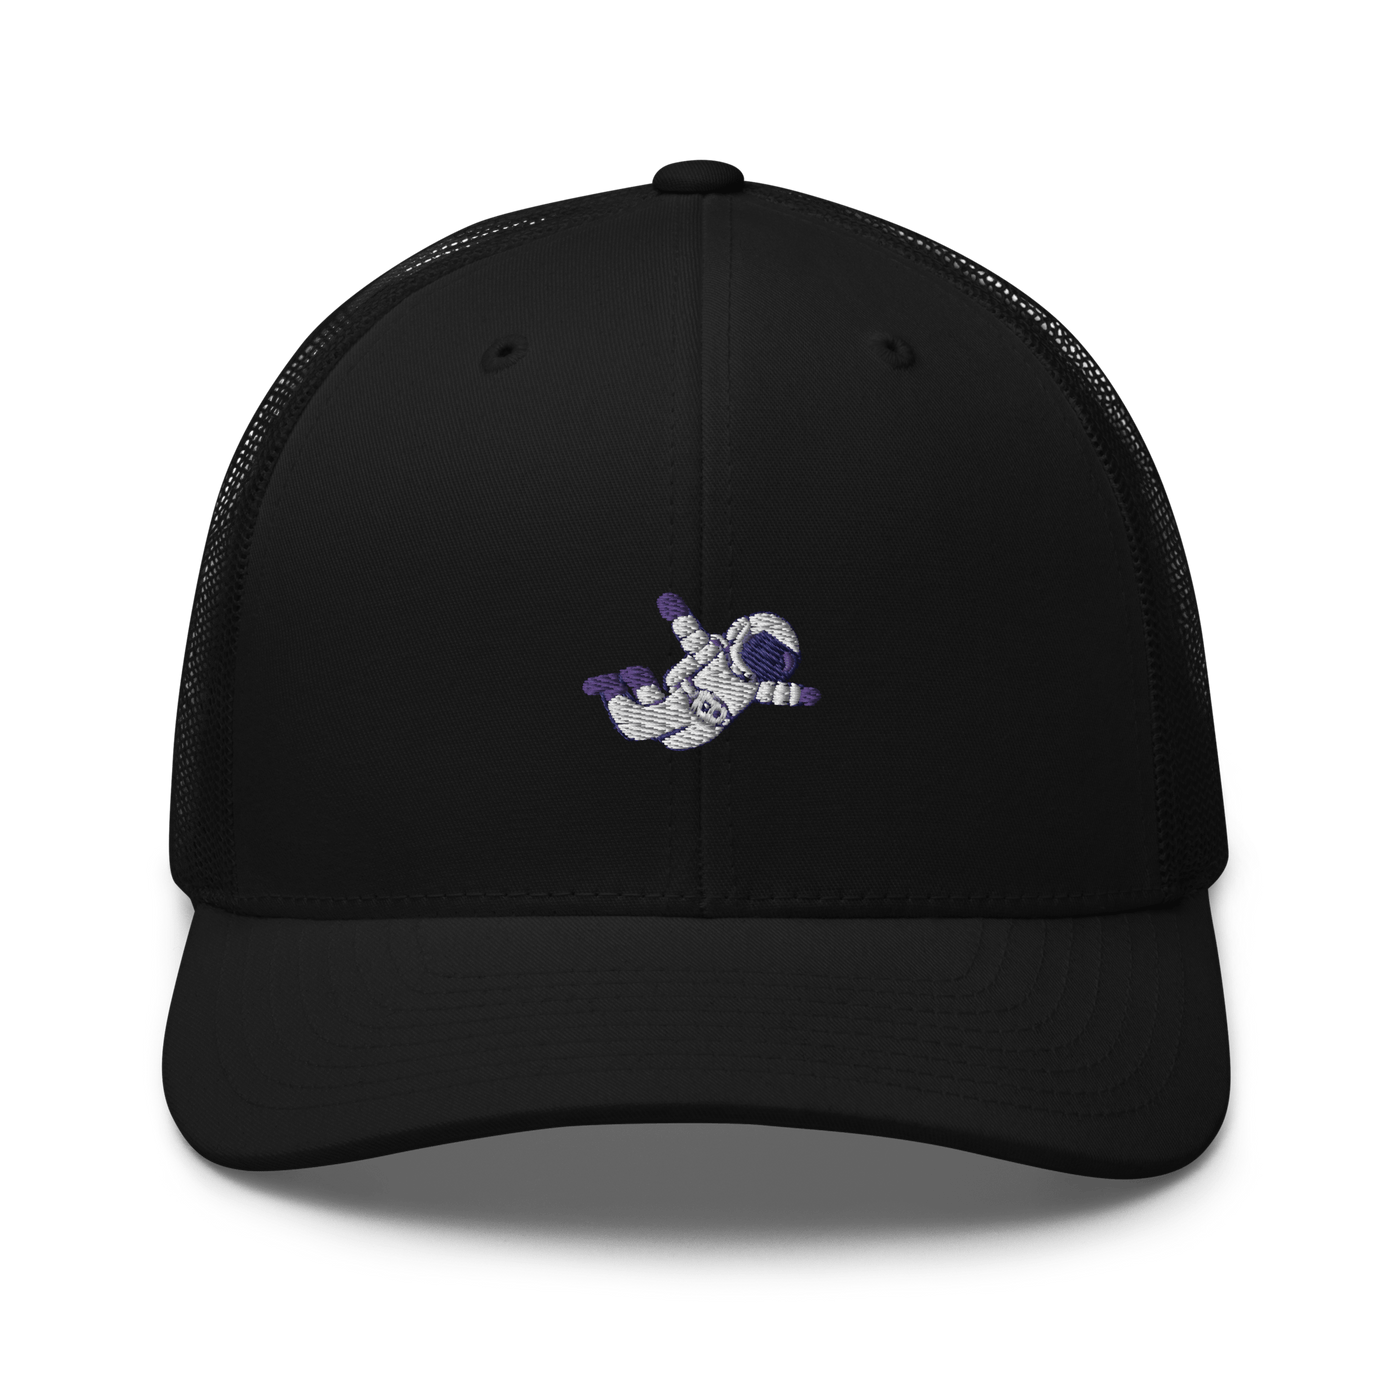 Astronaut Trucker Cap - Black - - Just Another Cap Store